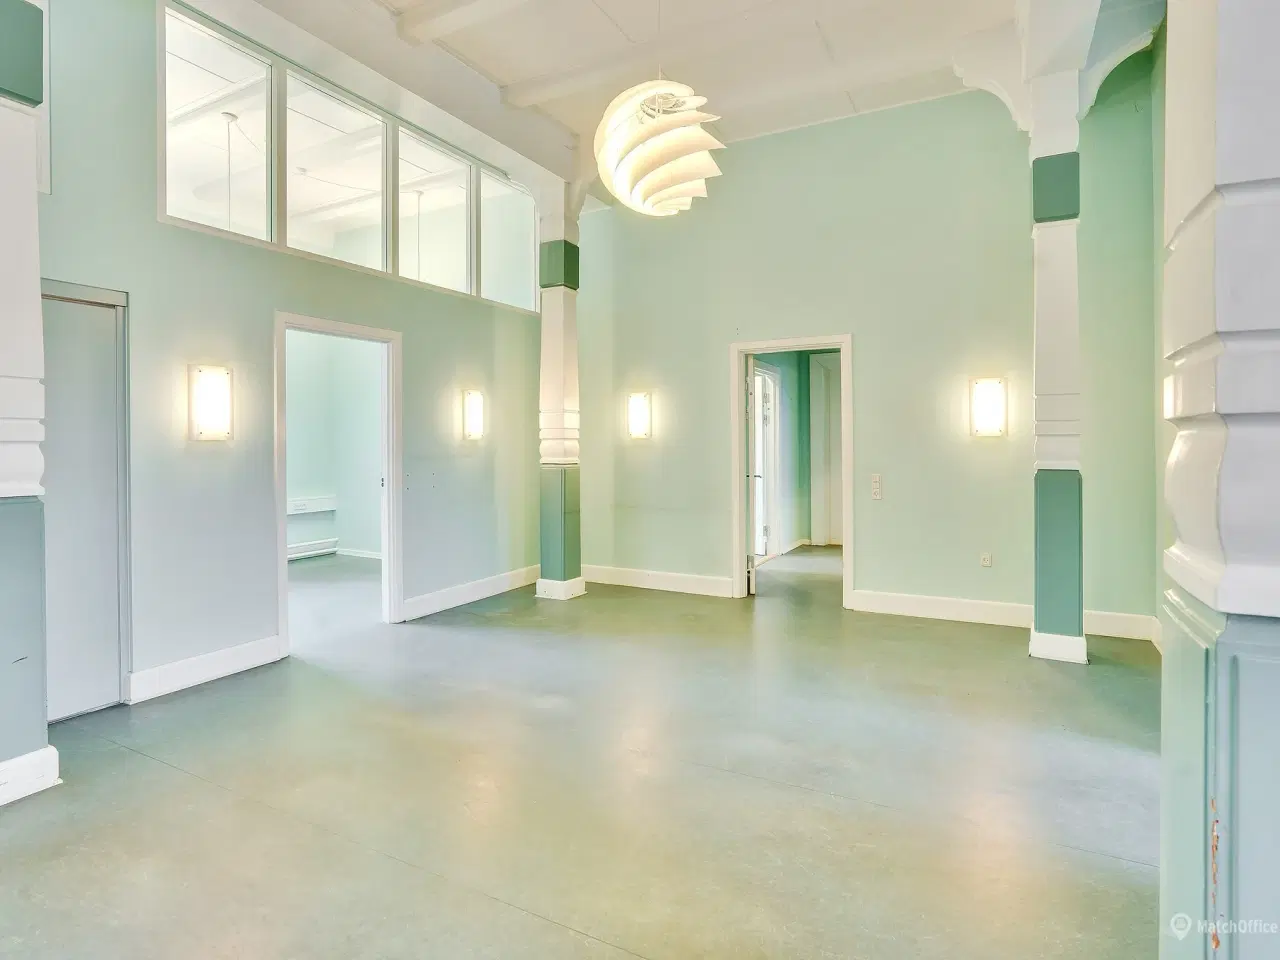 Billede 15 - Spændende kontorlokaler ved Indkøbscentret BROEN, i Esbjerg.